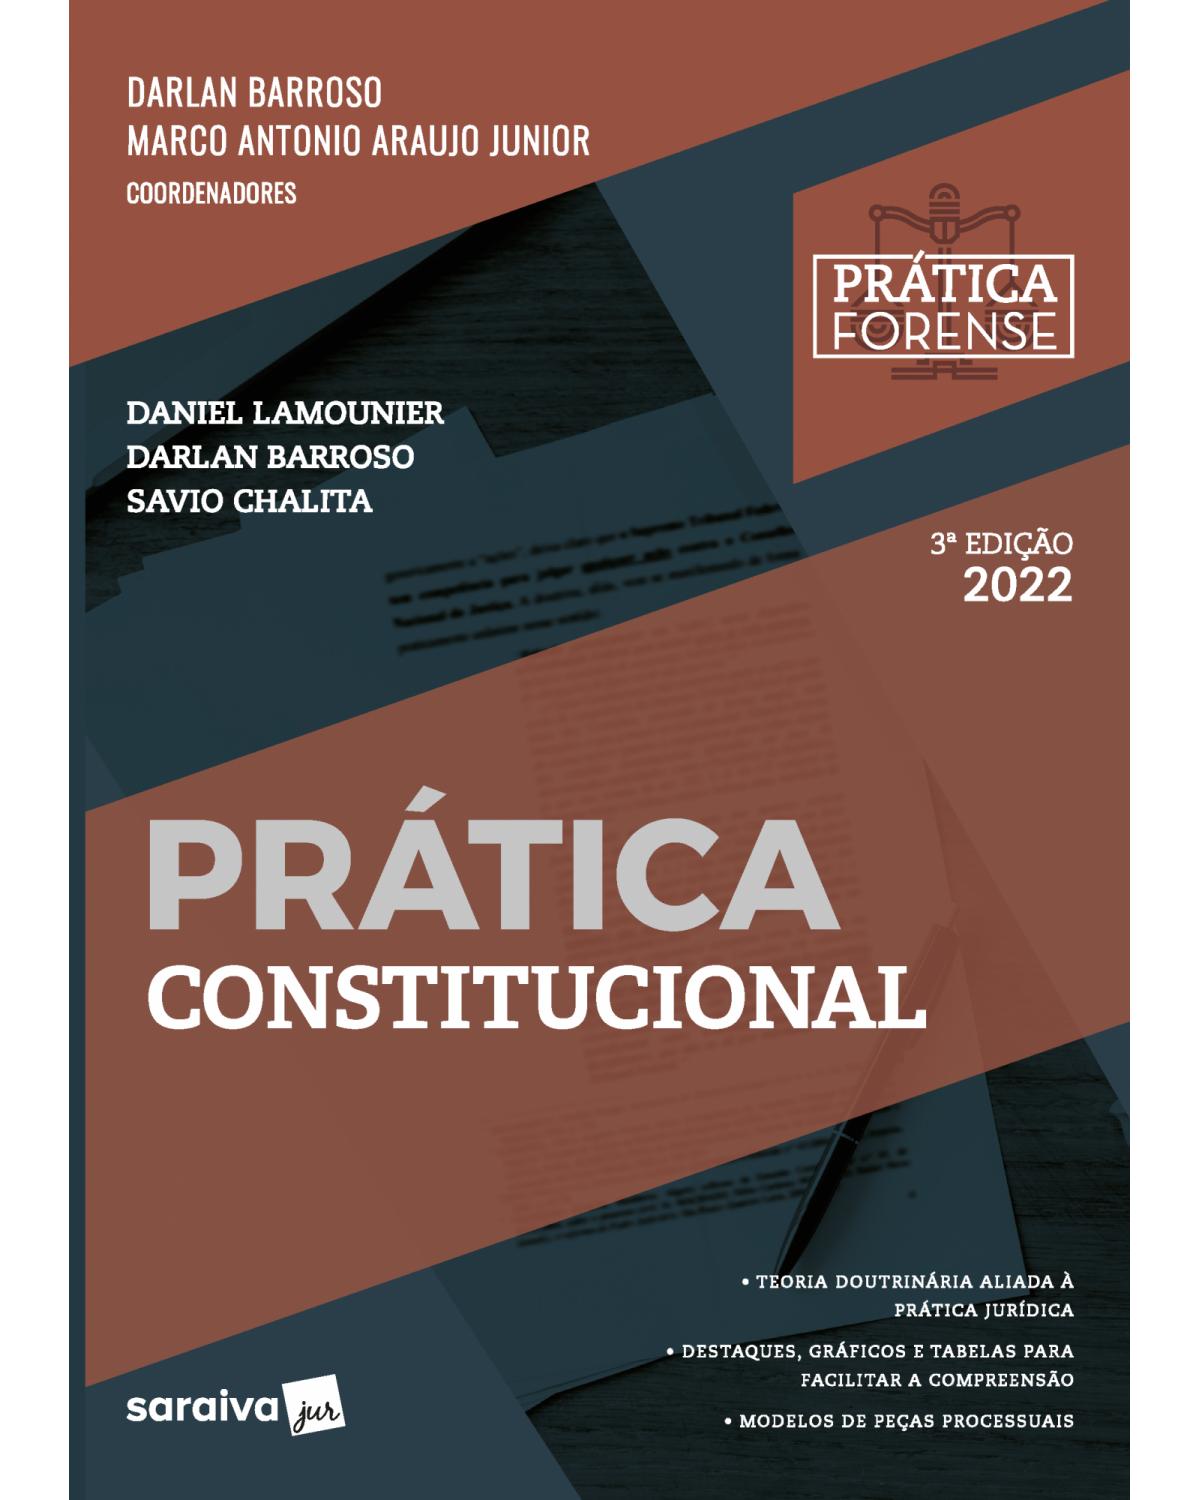 Coleção prática forense - Prática constitucional - 3ª Edição | 2022